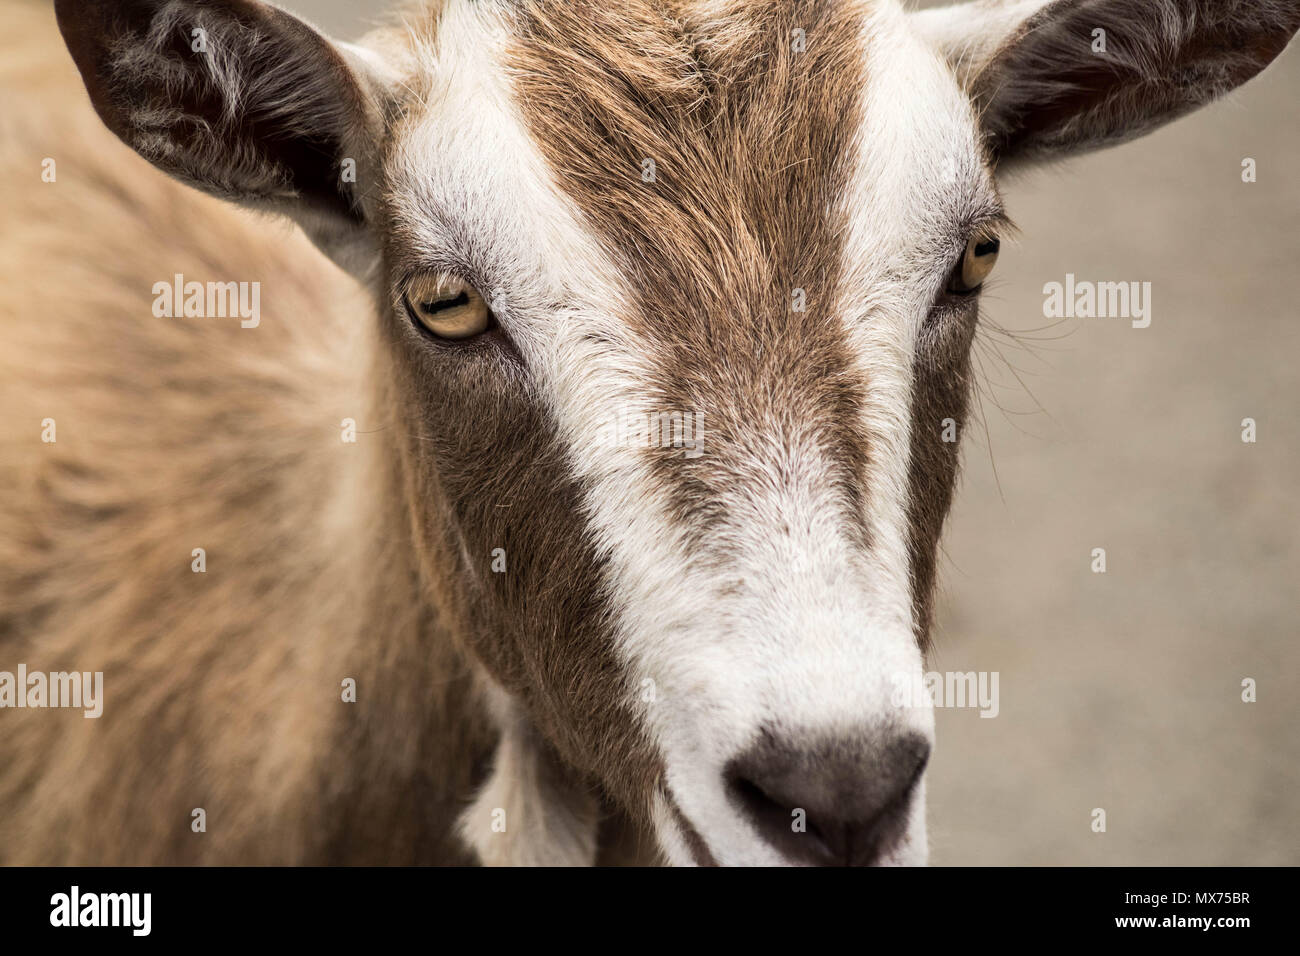 Cabra doméstica mirando con ojos increíbles Foto de stock